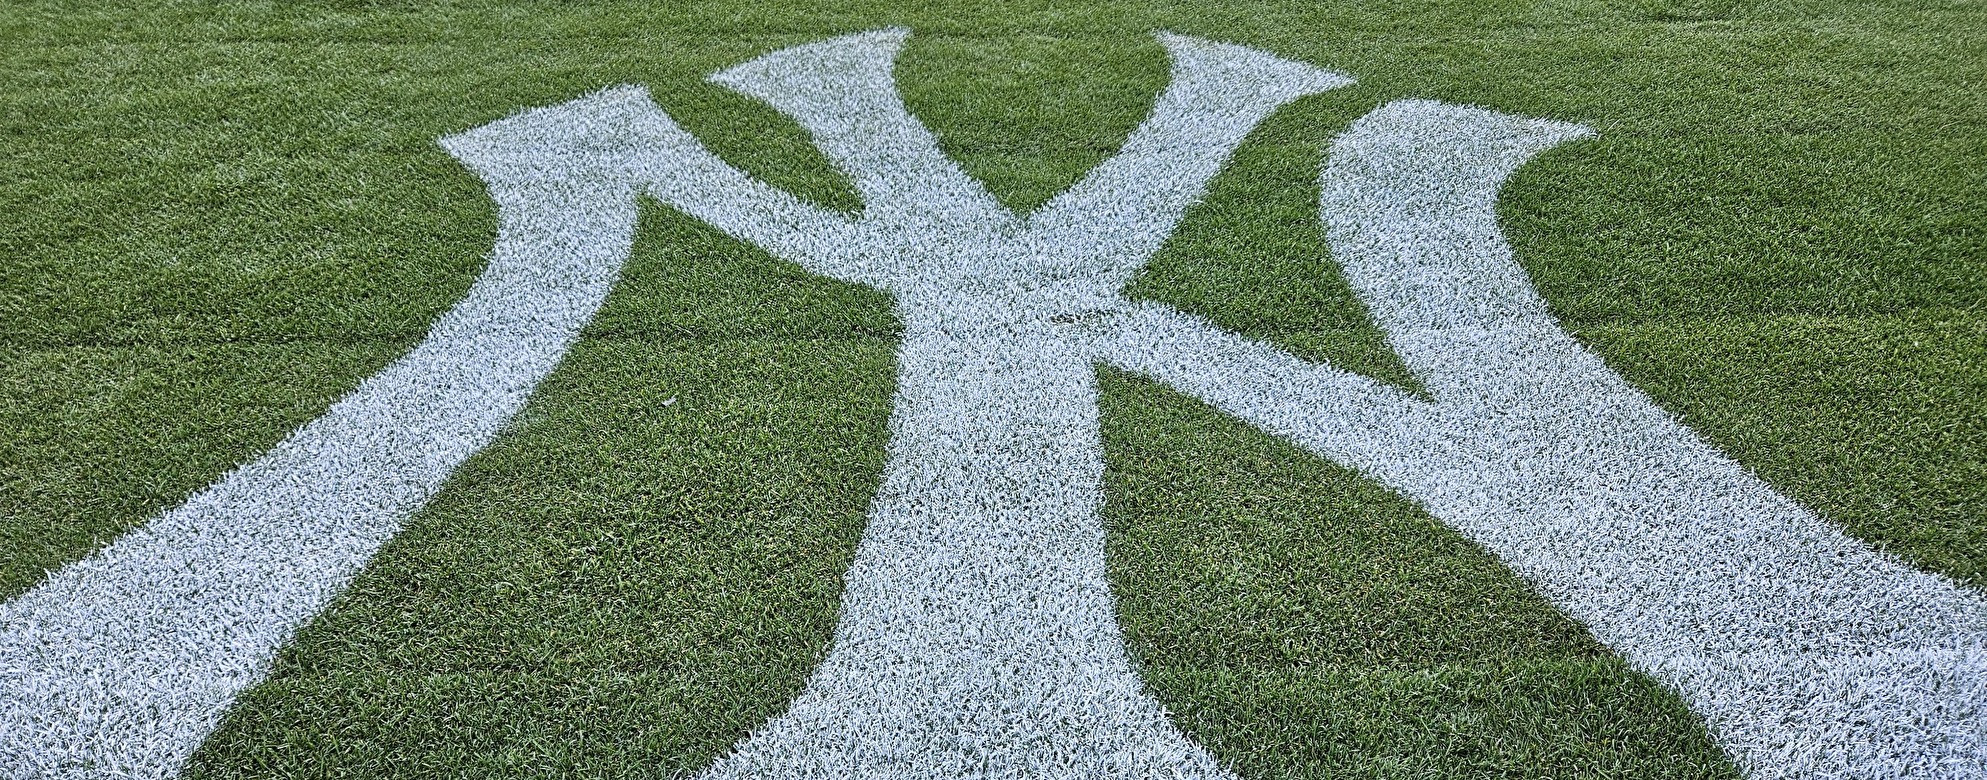 ヤンキー・スタジアム(ニューヨークヤンキース本拠地)の観戦方法を紹介